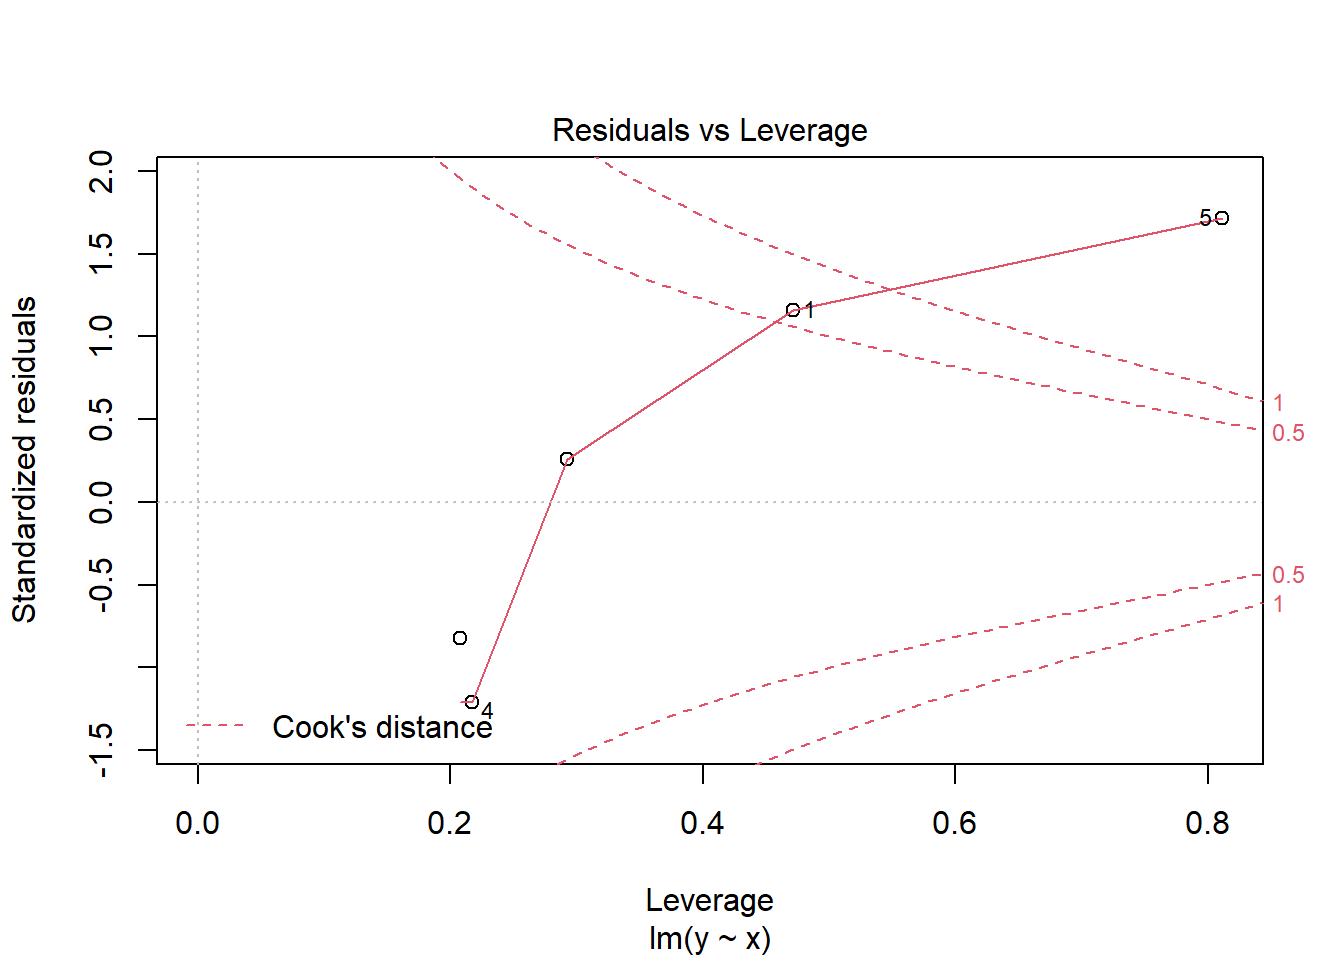 Residuals versus leverage plot